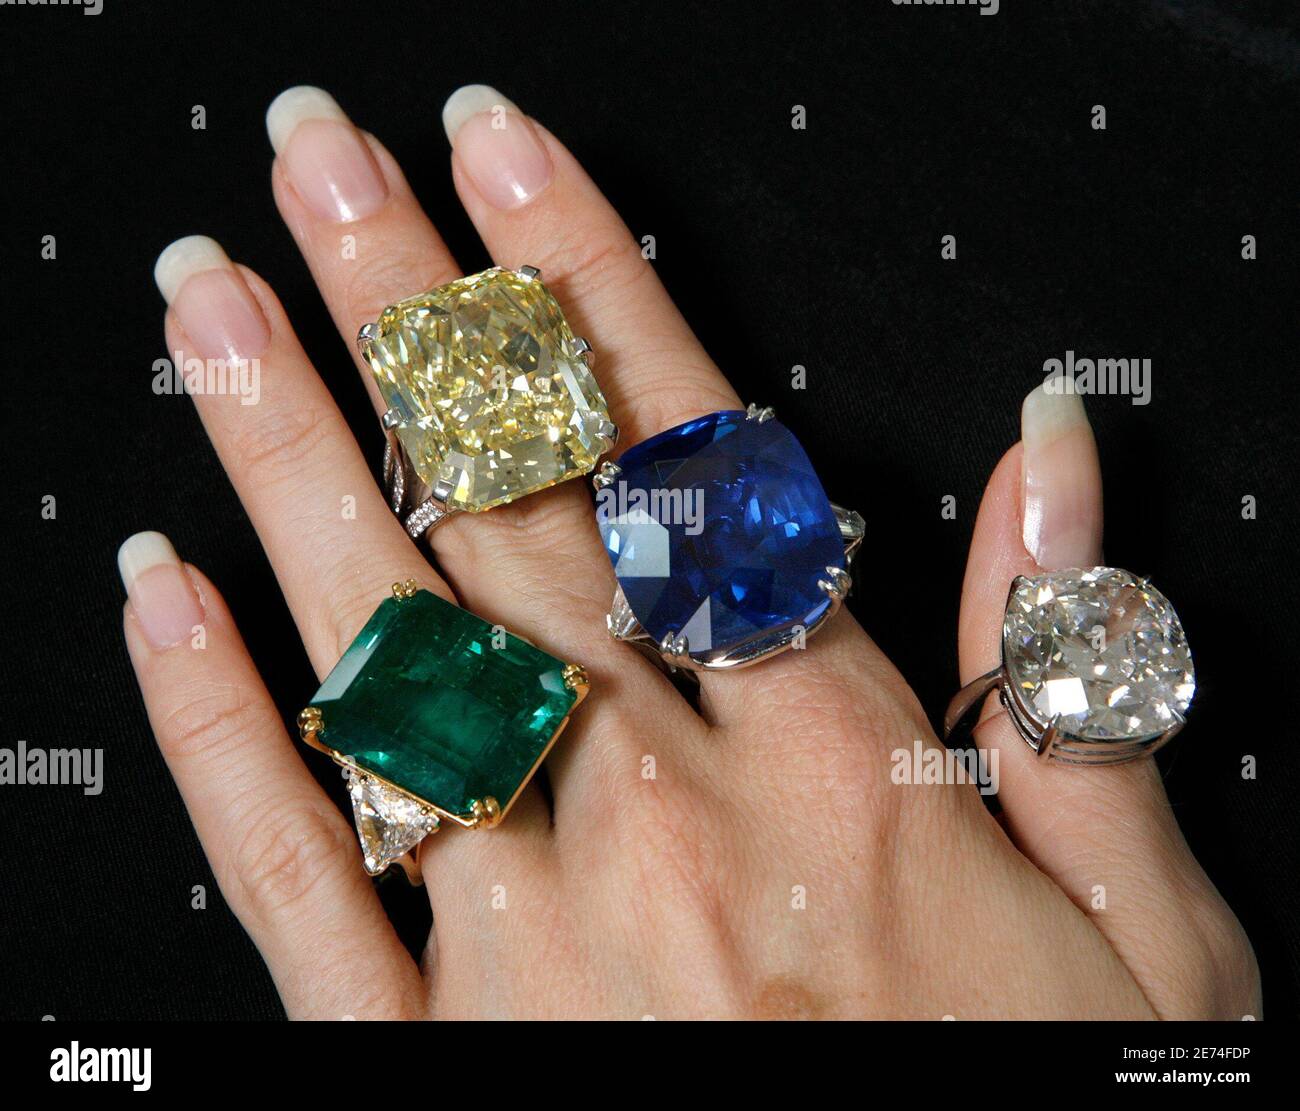 Helen Molesworth, specialista dei gioielli di Christie, presenta un anello di smeraldo e diamante (L) stimato a 600,000 - 800,000 dollari; un anello di diamante colorato (2L) stimato a 1,400,000 - 1,650,000 dollari; Un anello di zaffiro (2R) stimato a 300,000 dollari - a 410,000 dollari e un anello di diamante a pietra singola (R) stimato a 600,000 dollari - a 680,000 dollari durante un'anteprima dell'asta a Ginevra il 11 maggio 2007. I gioielli saranno venduti nel corso di una vendita a Ginevra il 17 maggio 2007. REUTERS/Denis Balibouse (SVIZZERA) Foto Stock